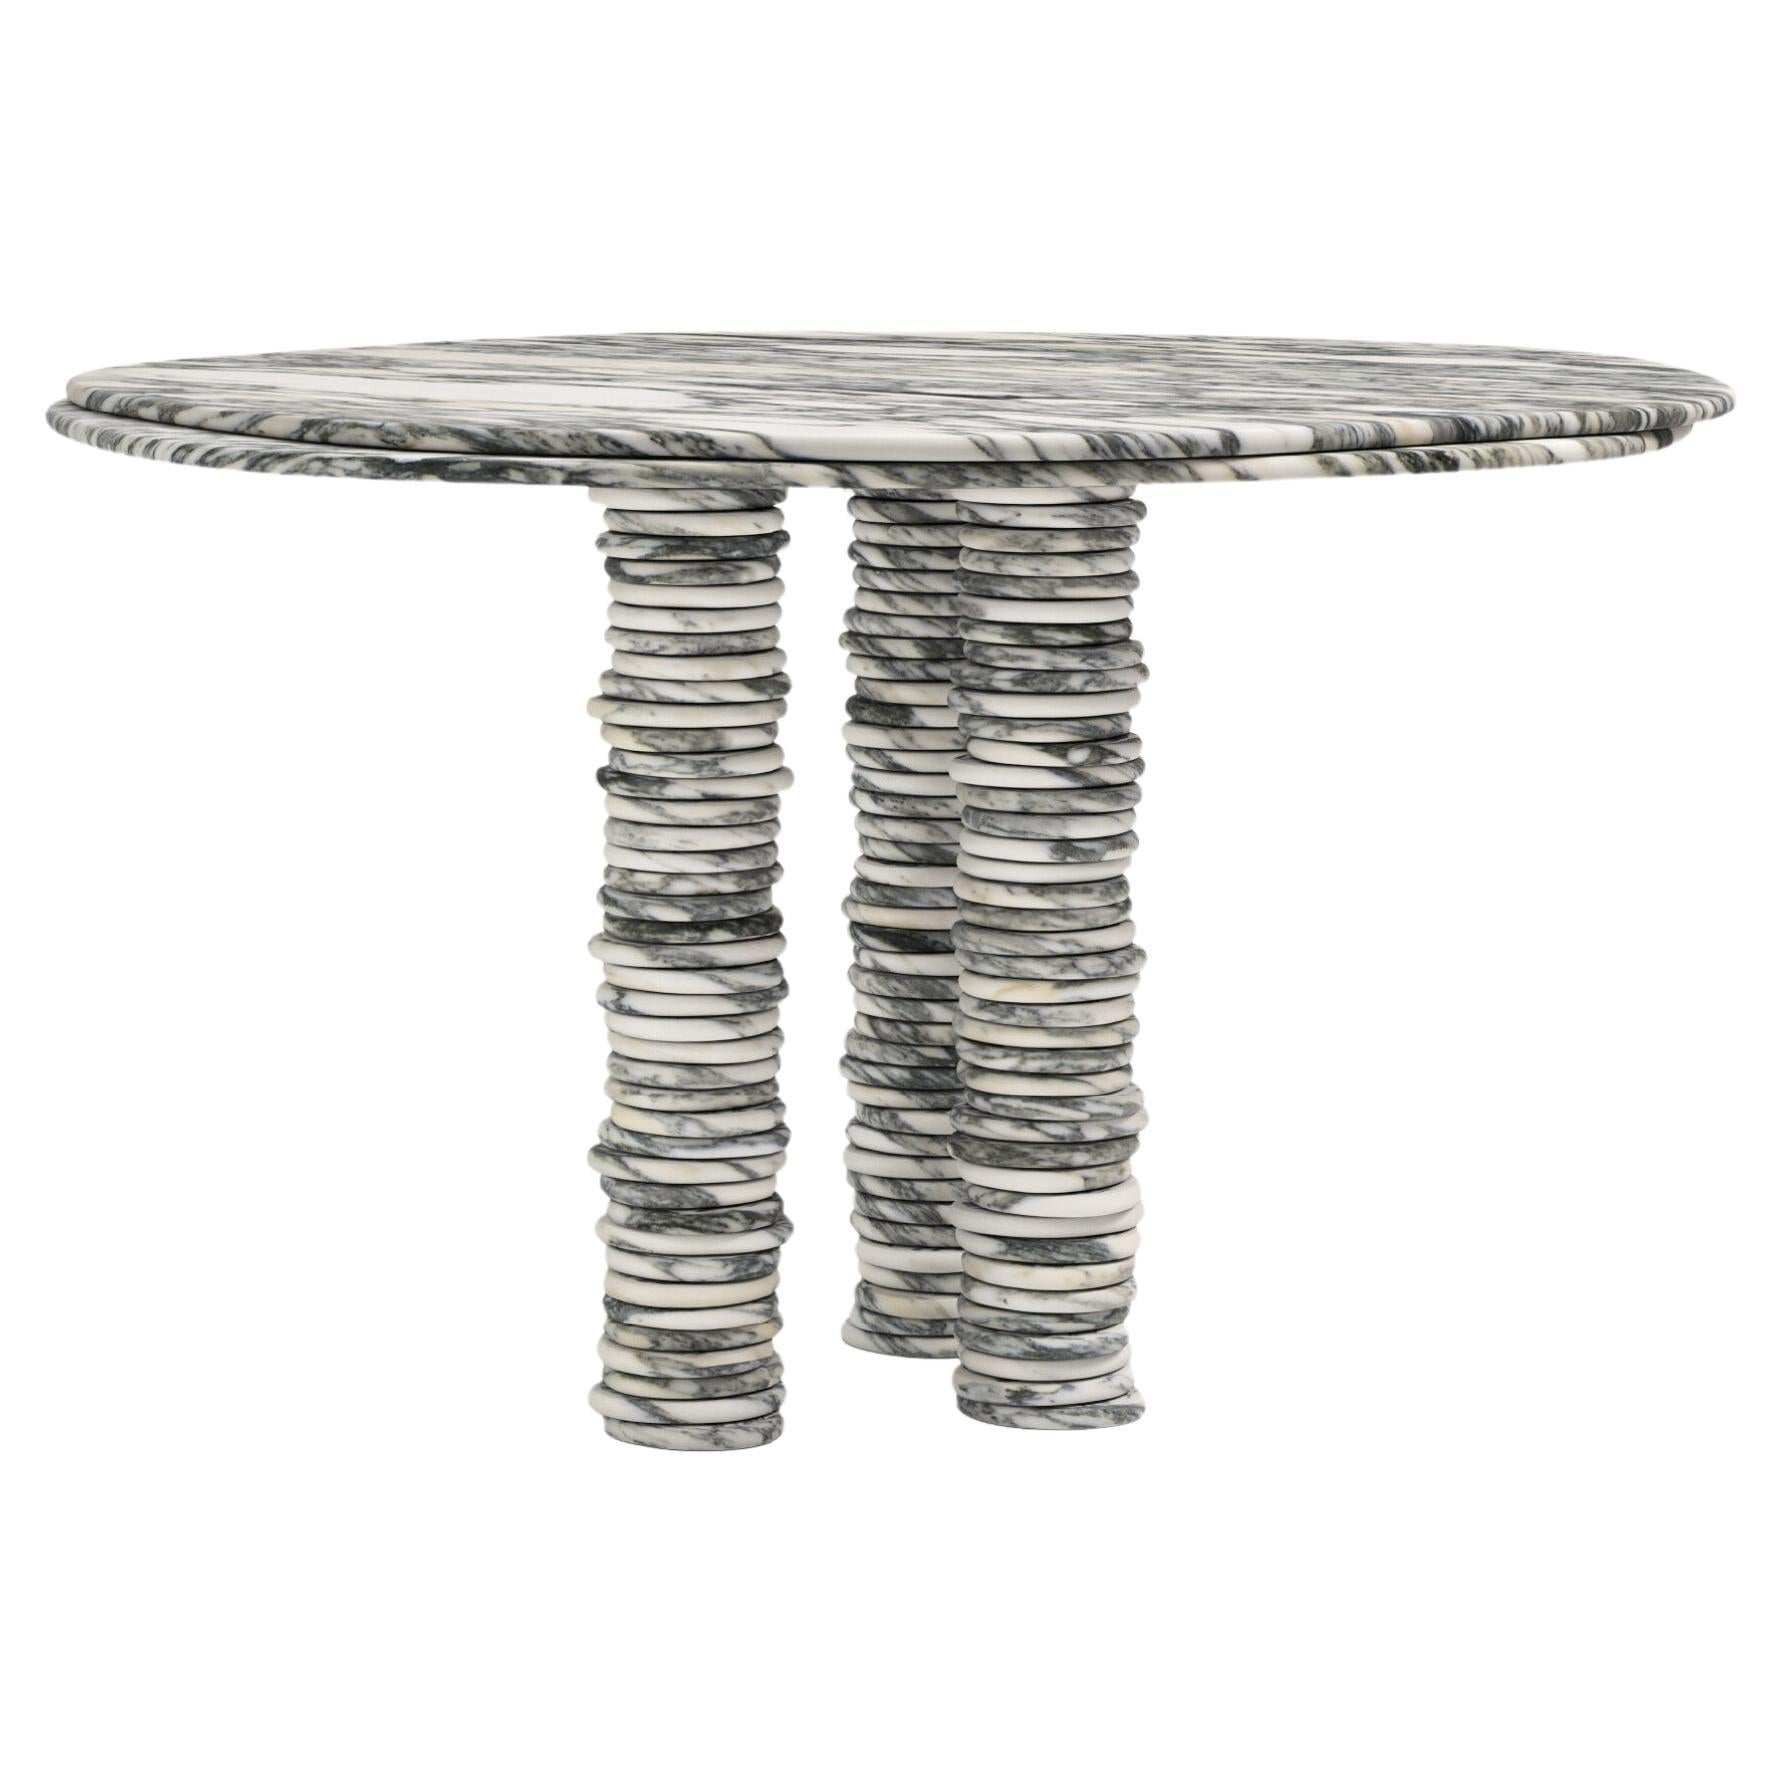 FORM(LA) Onda Round Dining Table 48”L x 48”W x 29”H Arabescato Corchia Marble For Sale